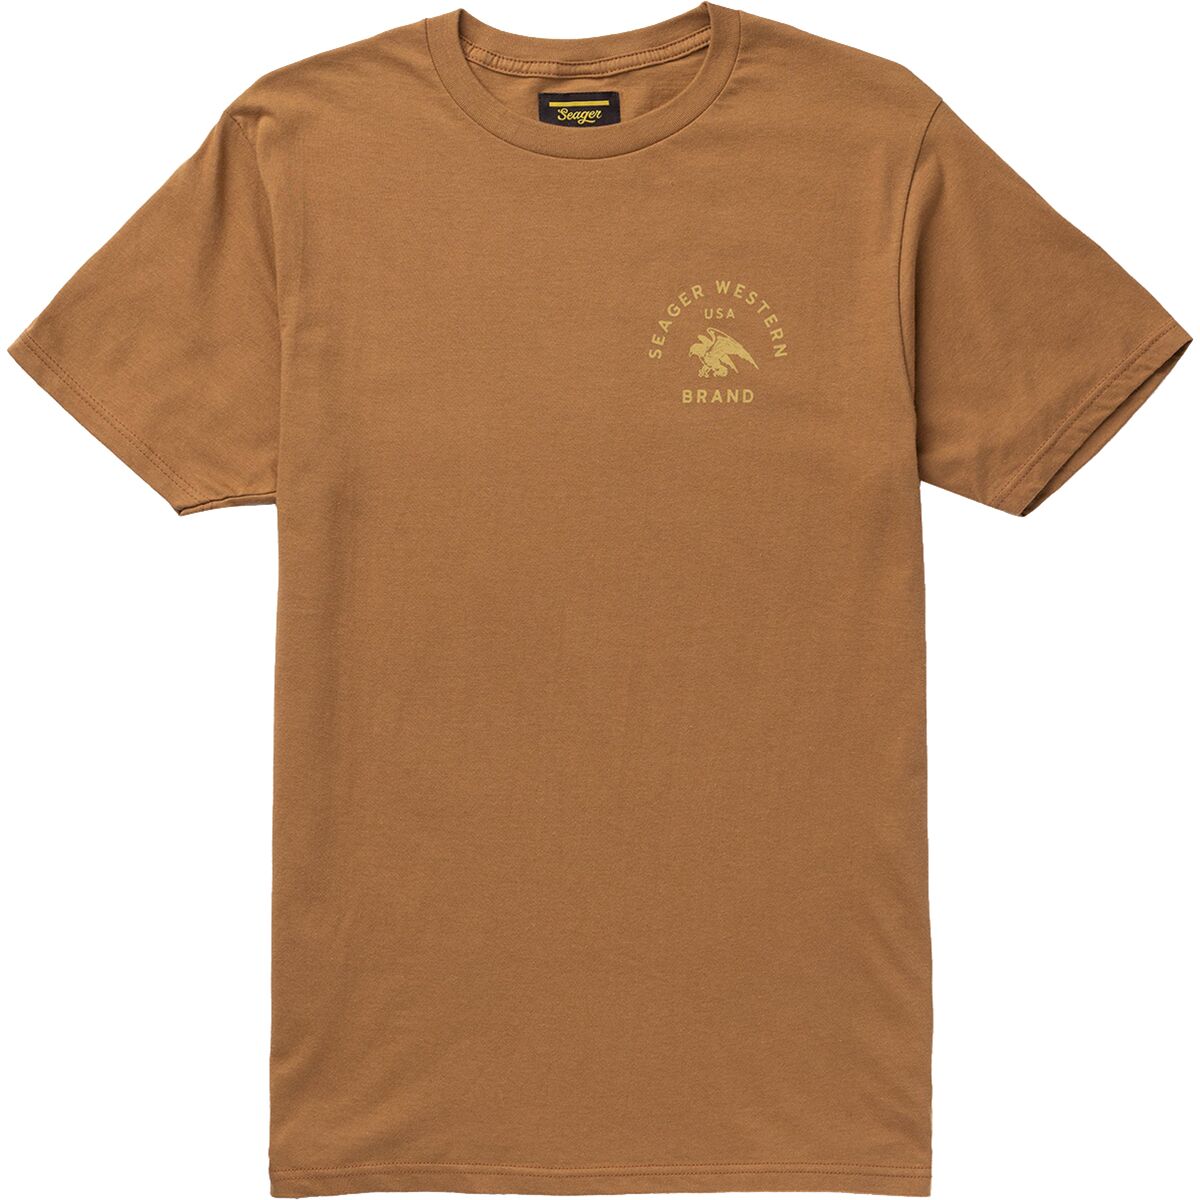 Winchester T-Shirt - Men